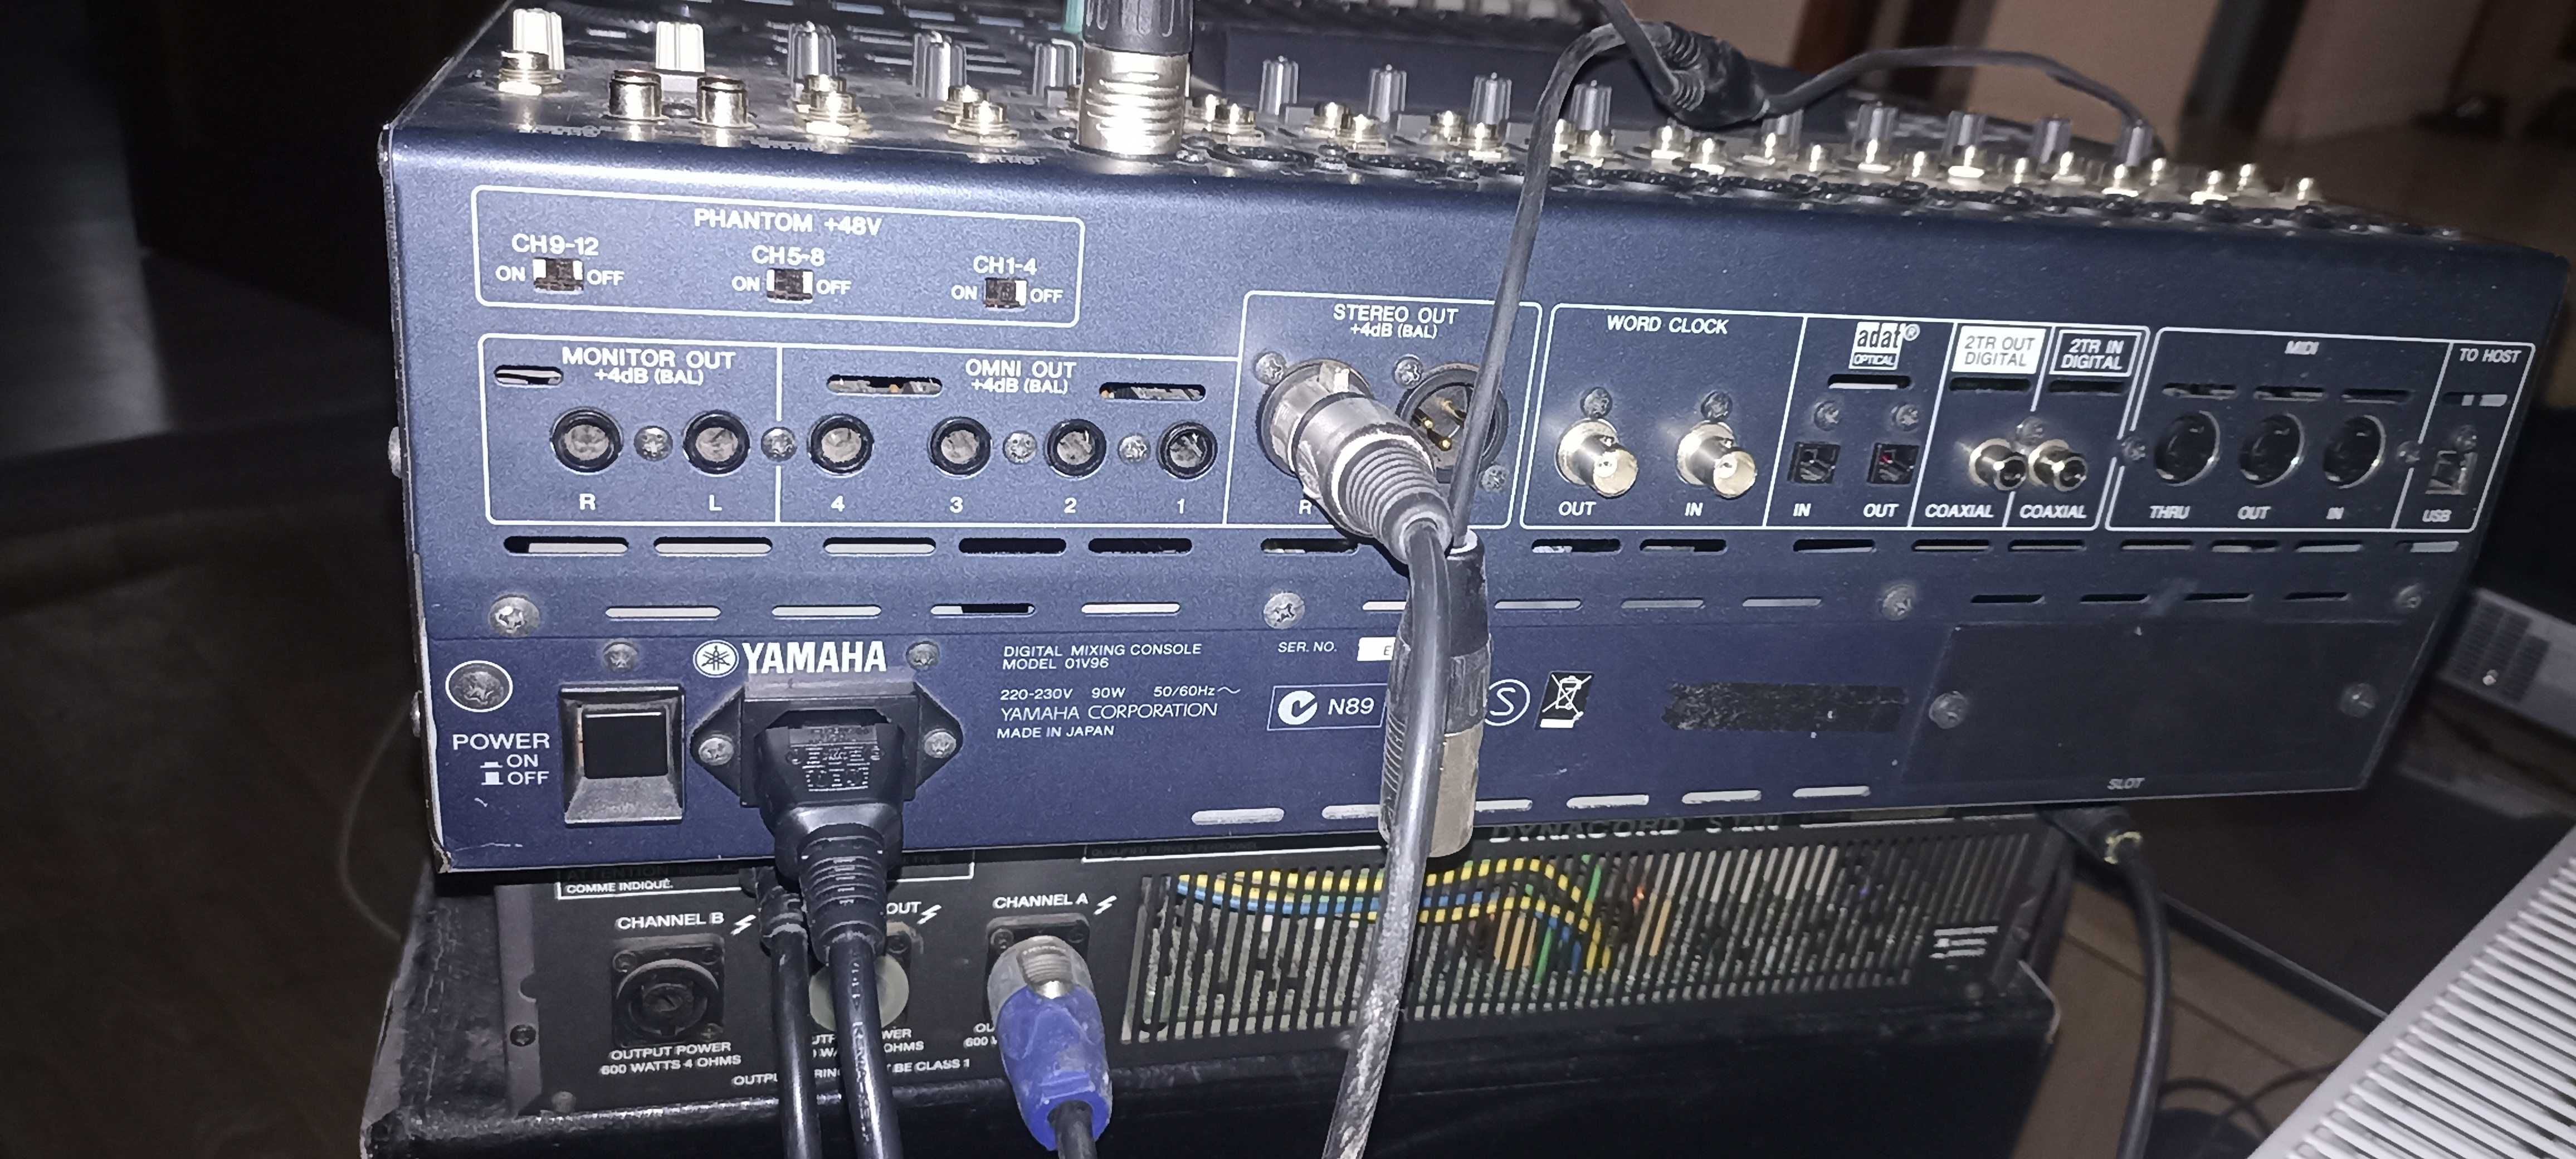 Mixer Yamaha 01v96 vcm